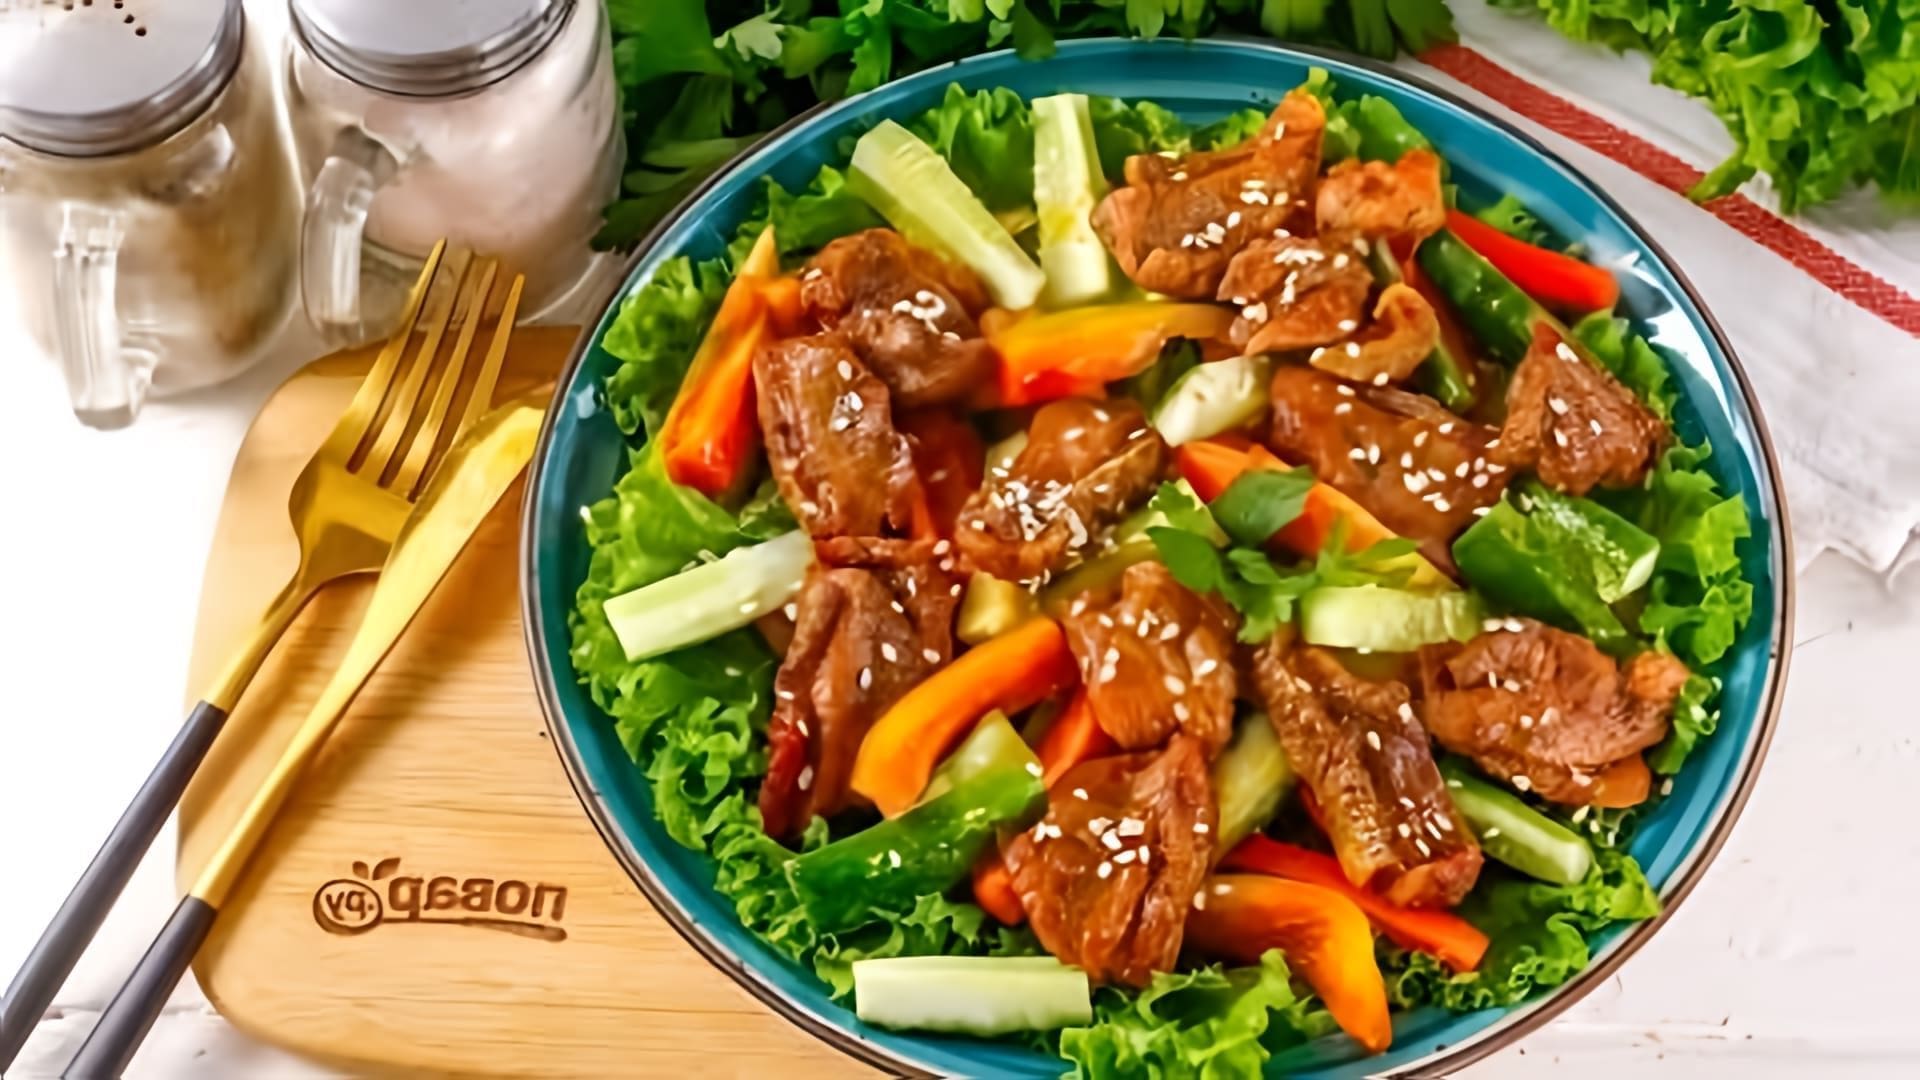 В этом видео демонстрируется рецепт китайского салата с курицей терияки